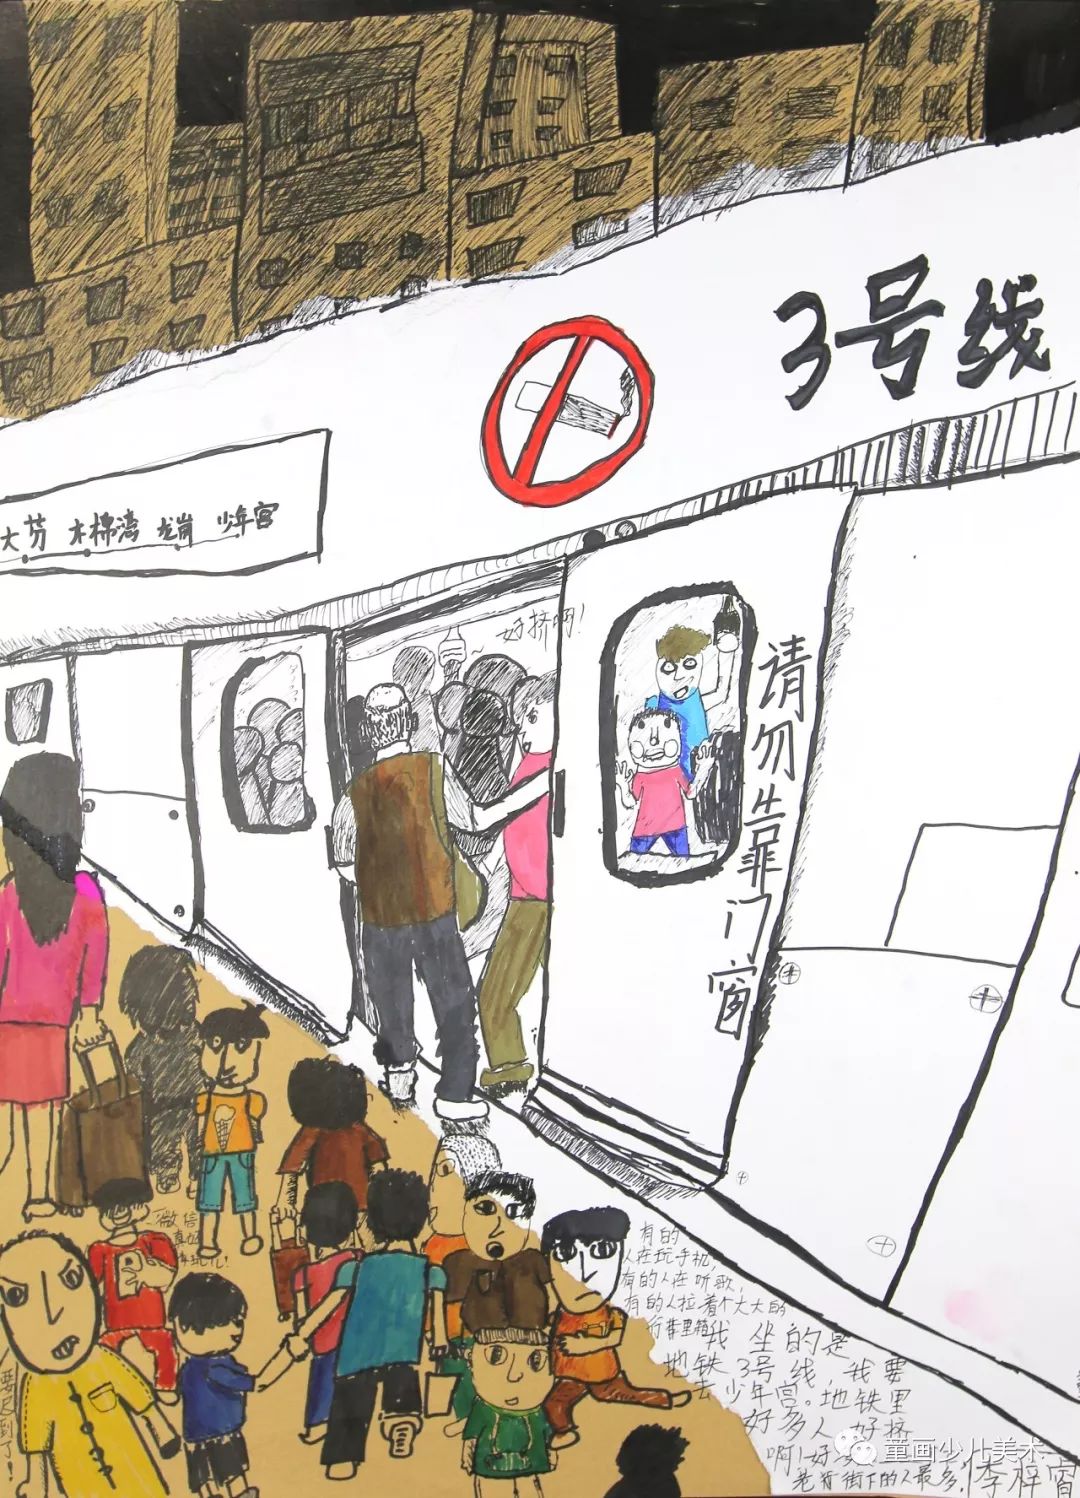 深圳儿童绘画号地铁开通,好多童画小朋友的画尽在童画专属车厢(4号